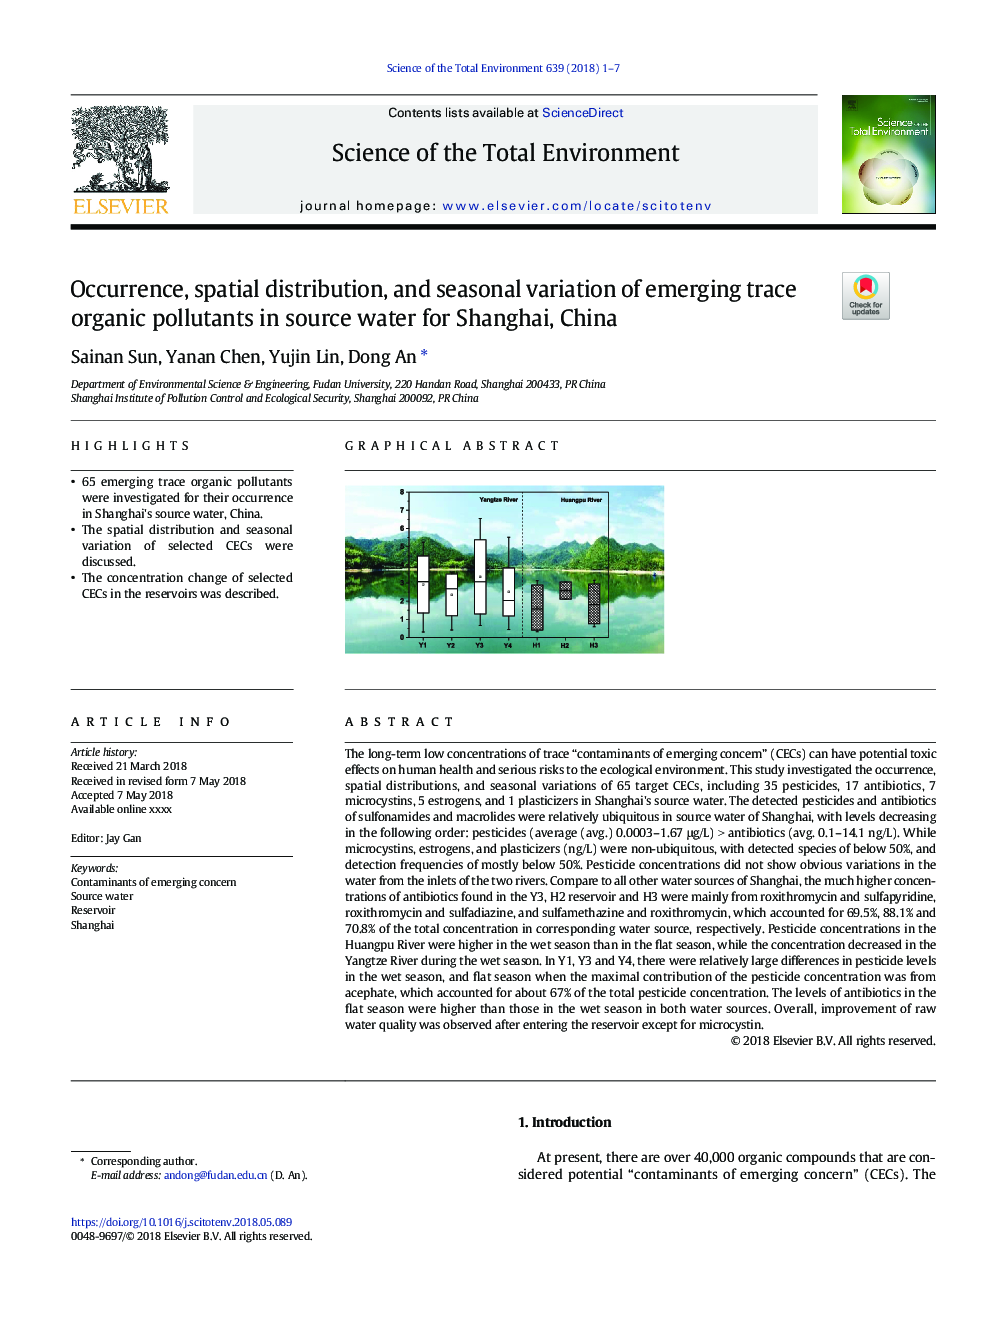 پیدایش، توزیع فضایی و تنوع فصلی آلاینده های آلی ردیابی در آبهای منبع برای شانگهای، چین 